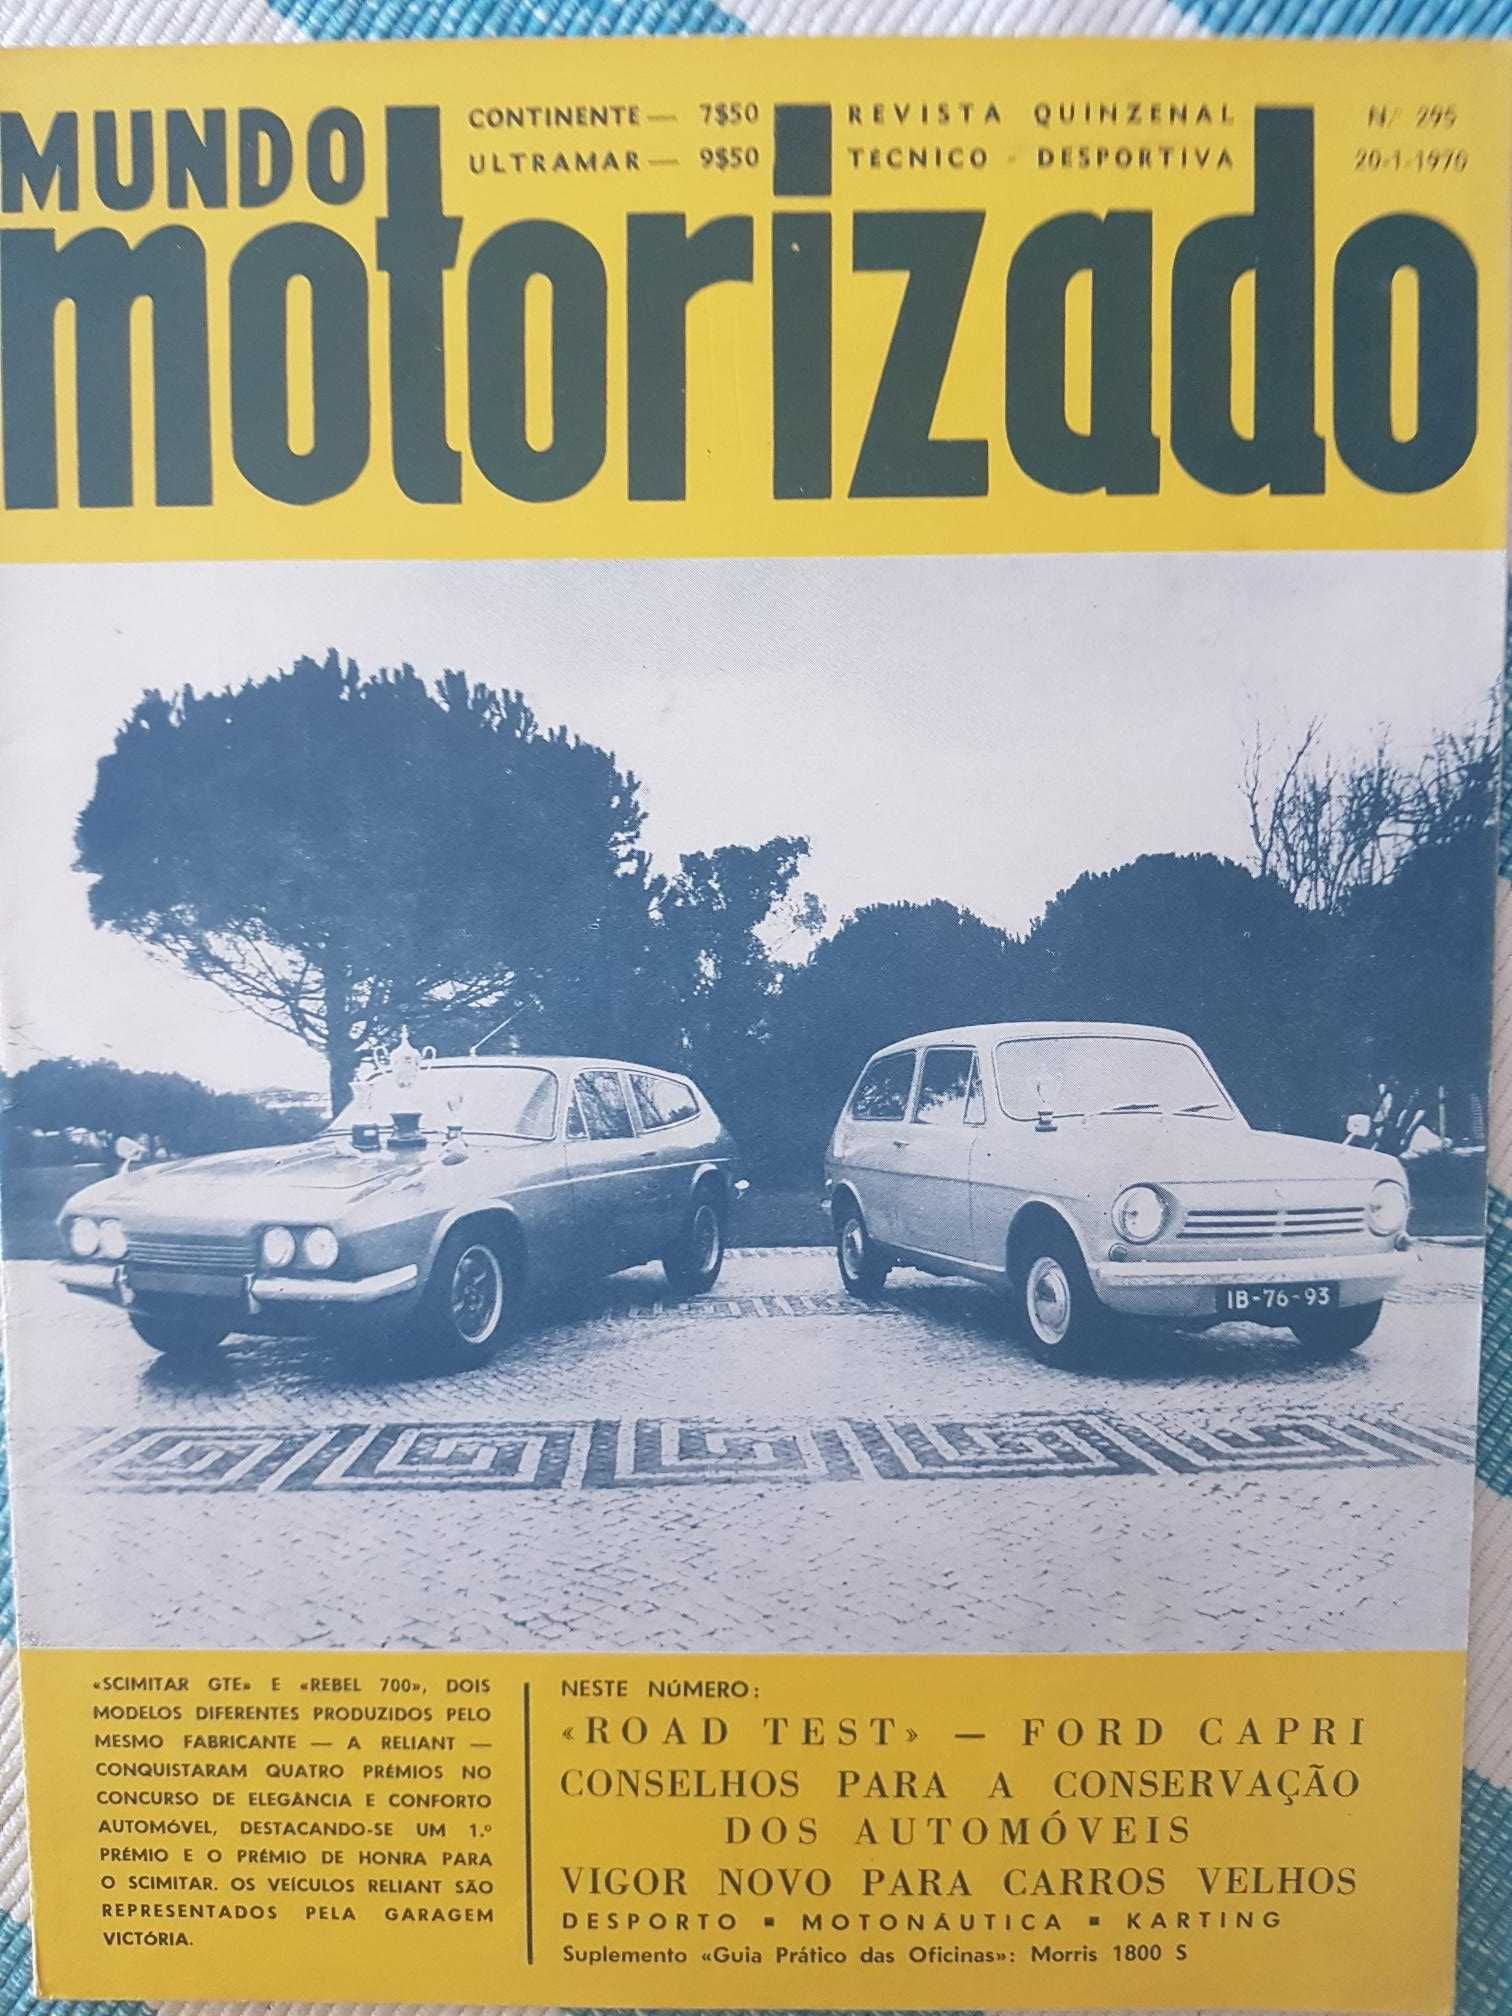 Revista Mundo Motorizado Nº295 (Ano:1970)